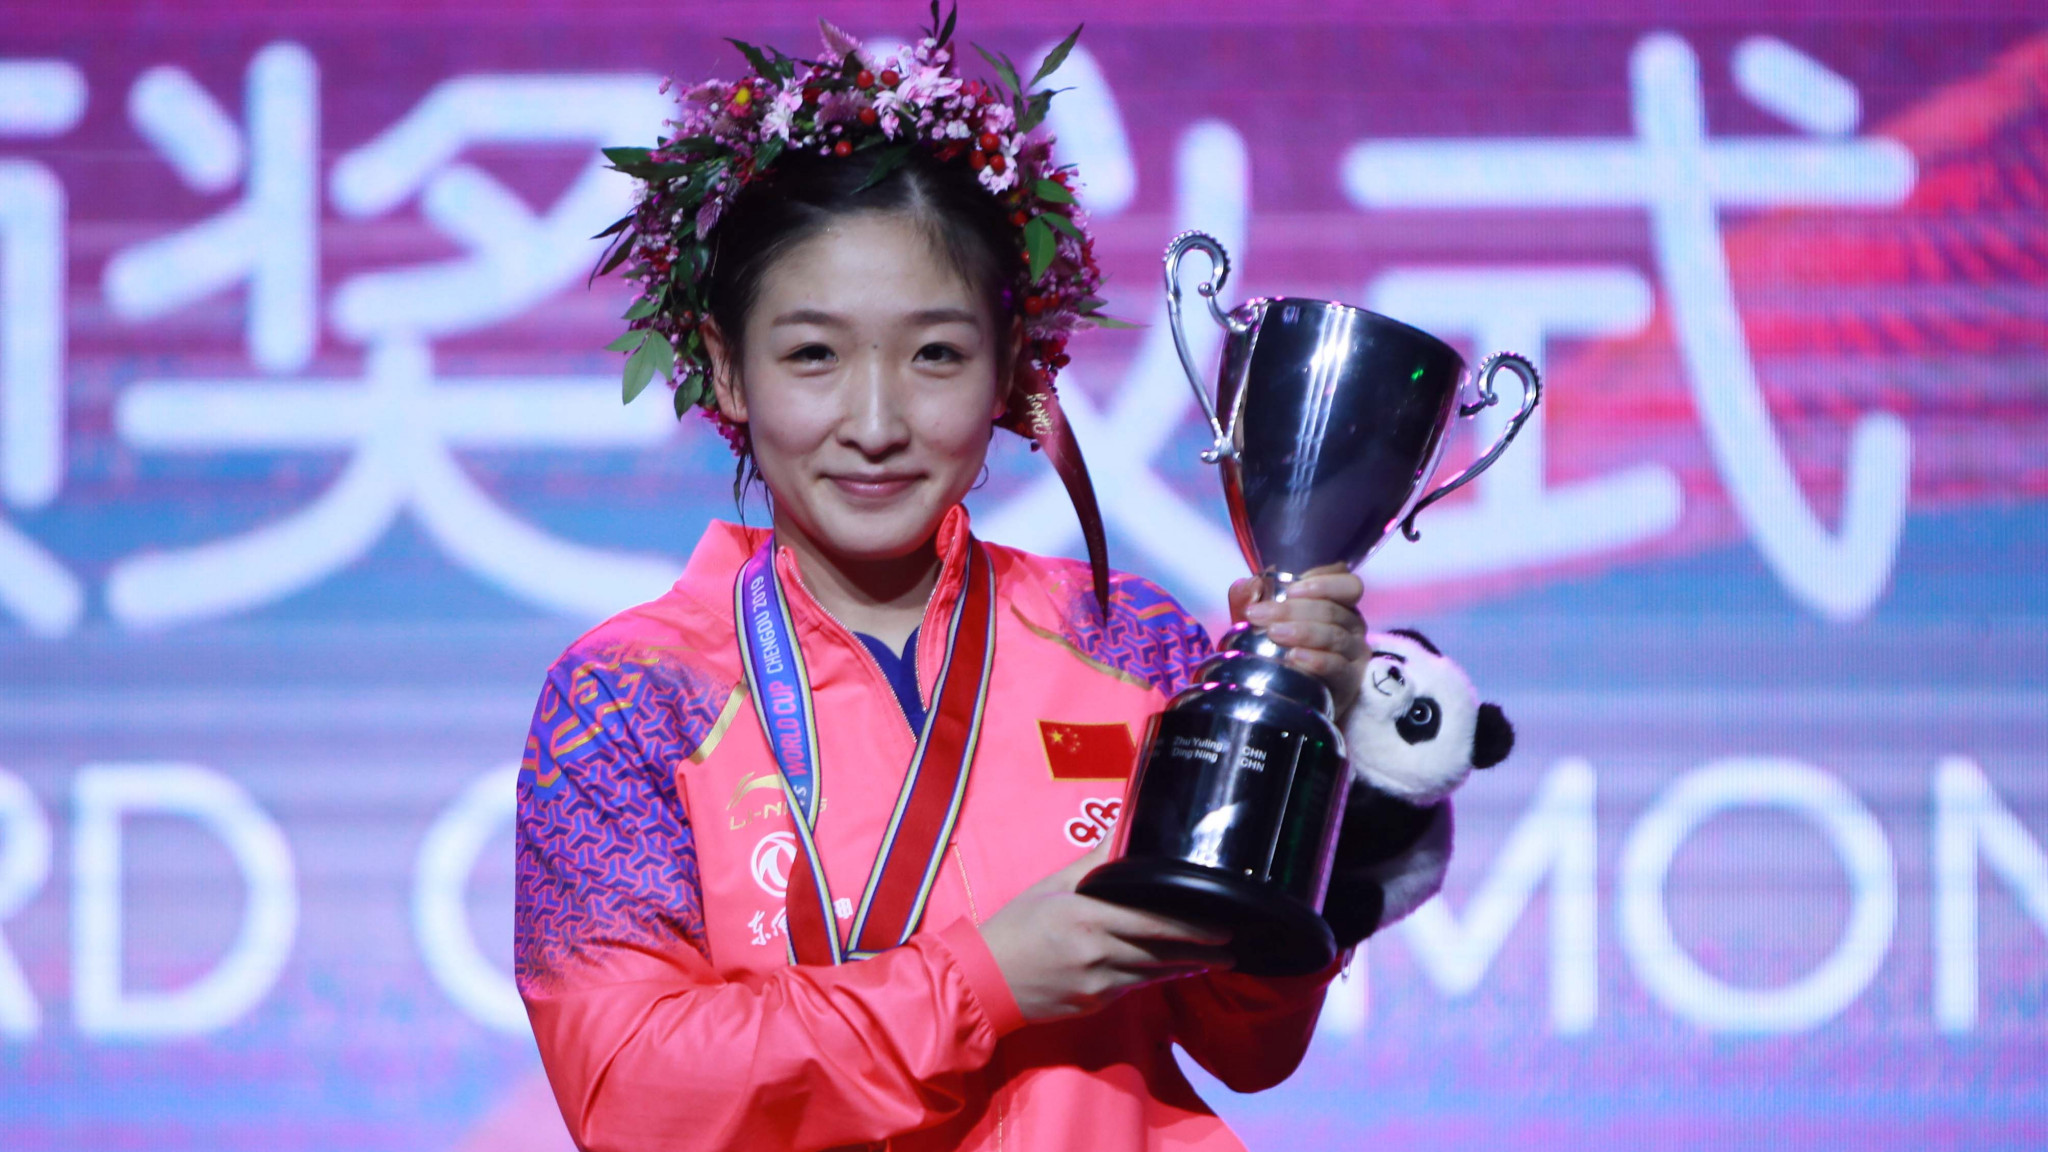 Liu defeats top seed Zhu to win ITTF Women's World Cup